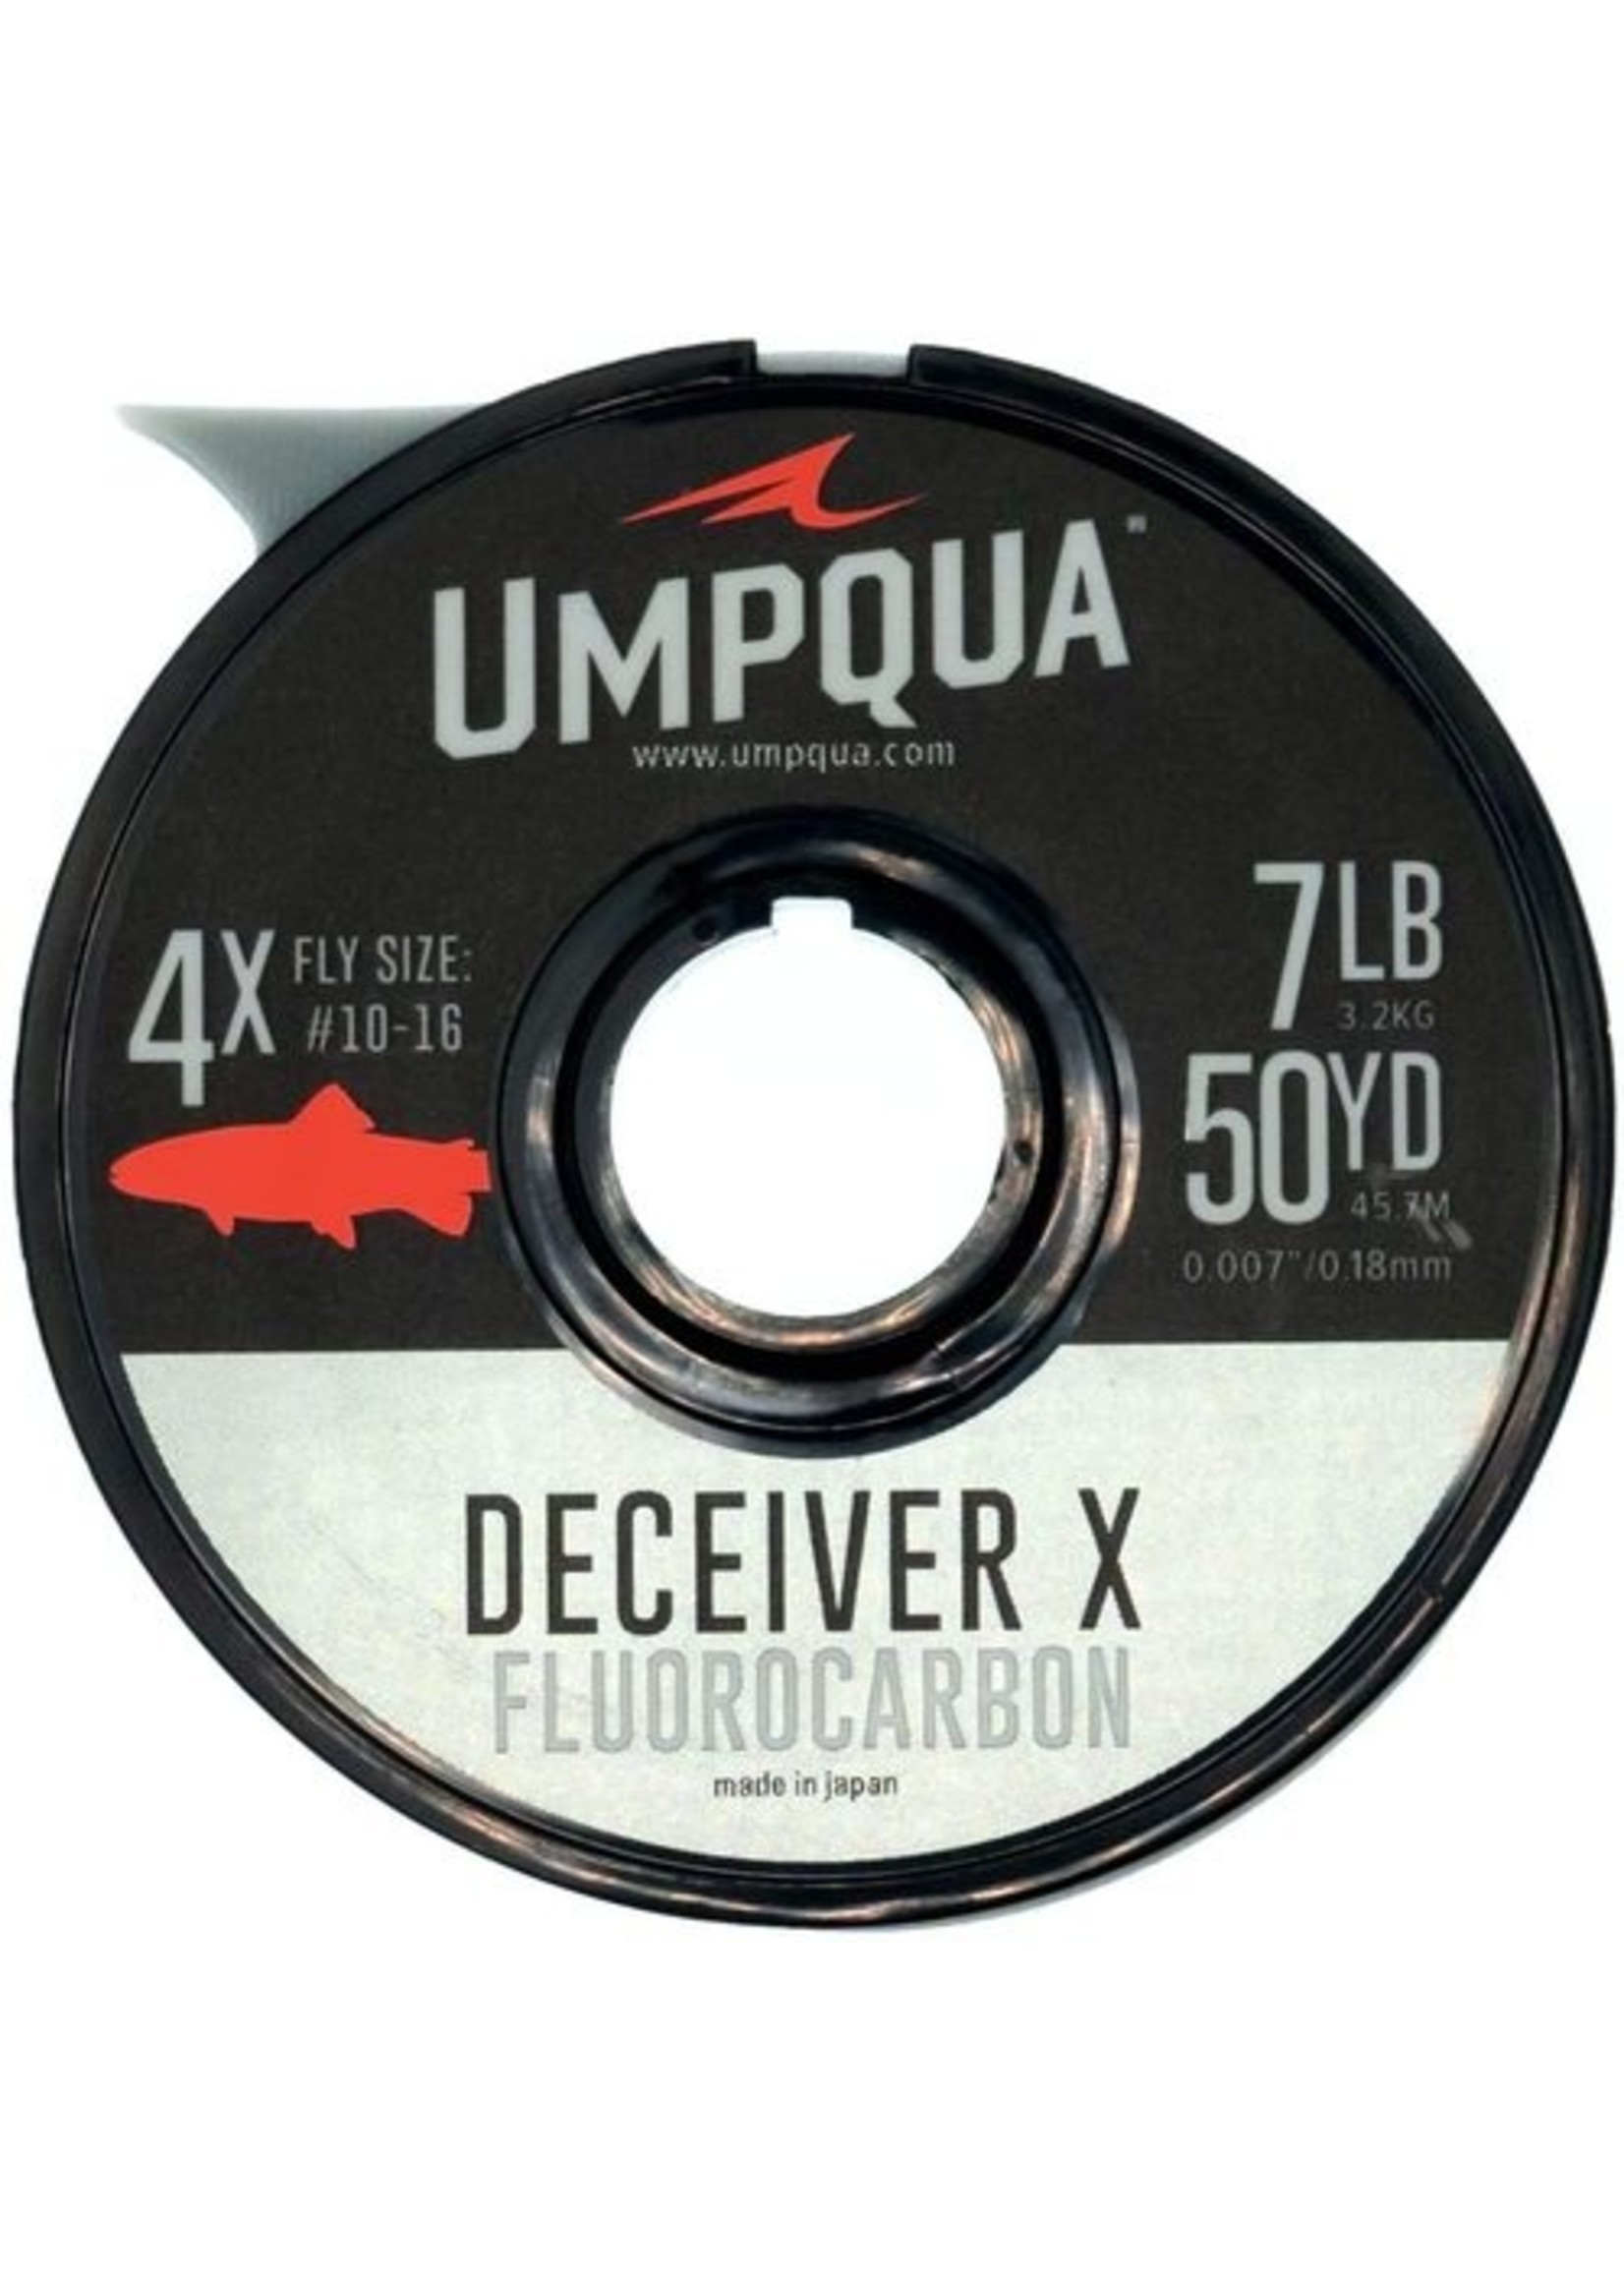 Umpqua Umpqua Deceiver X Fluorocarbon Tippet 50yds